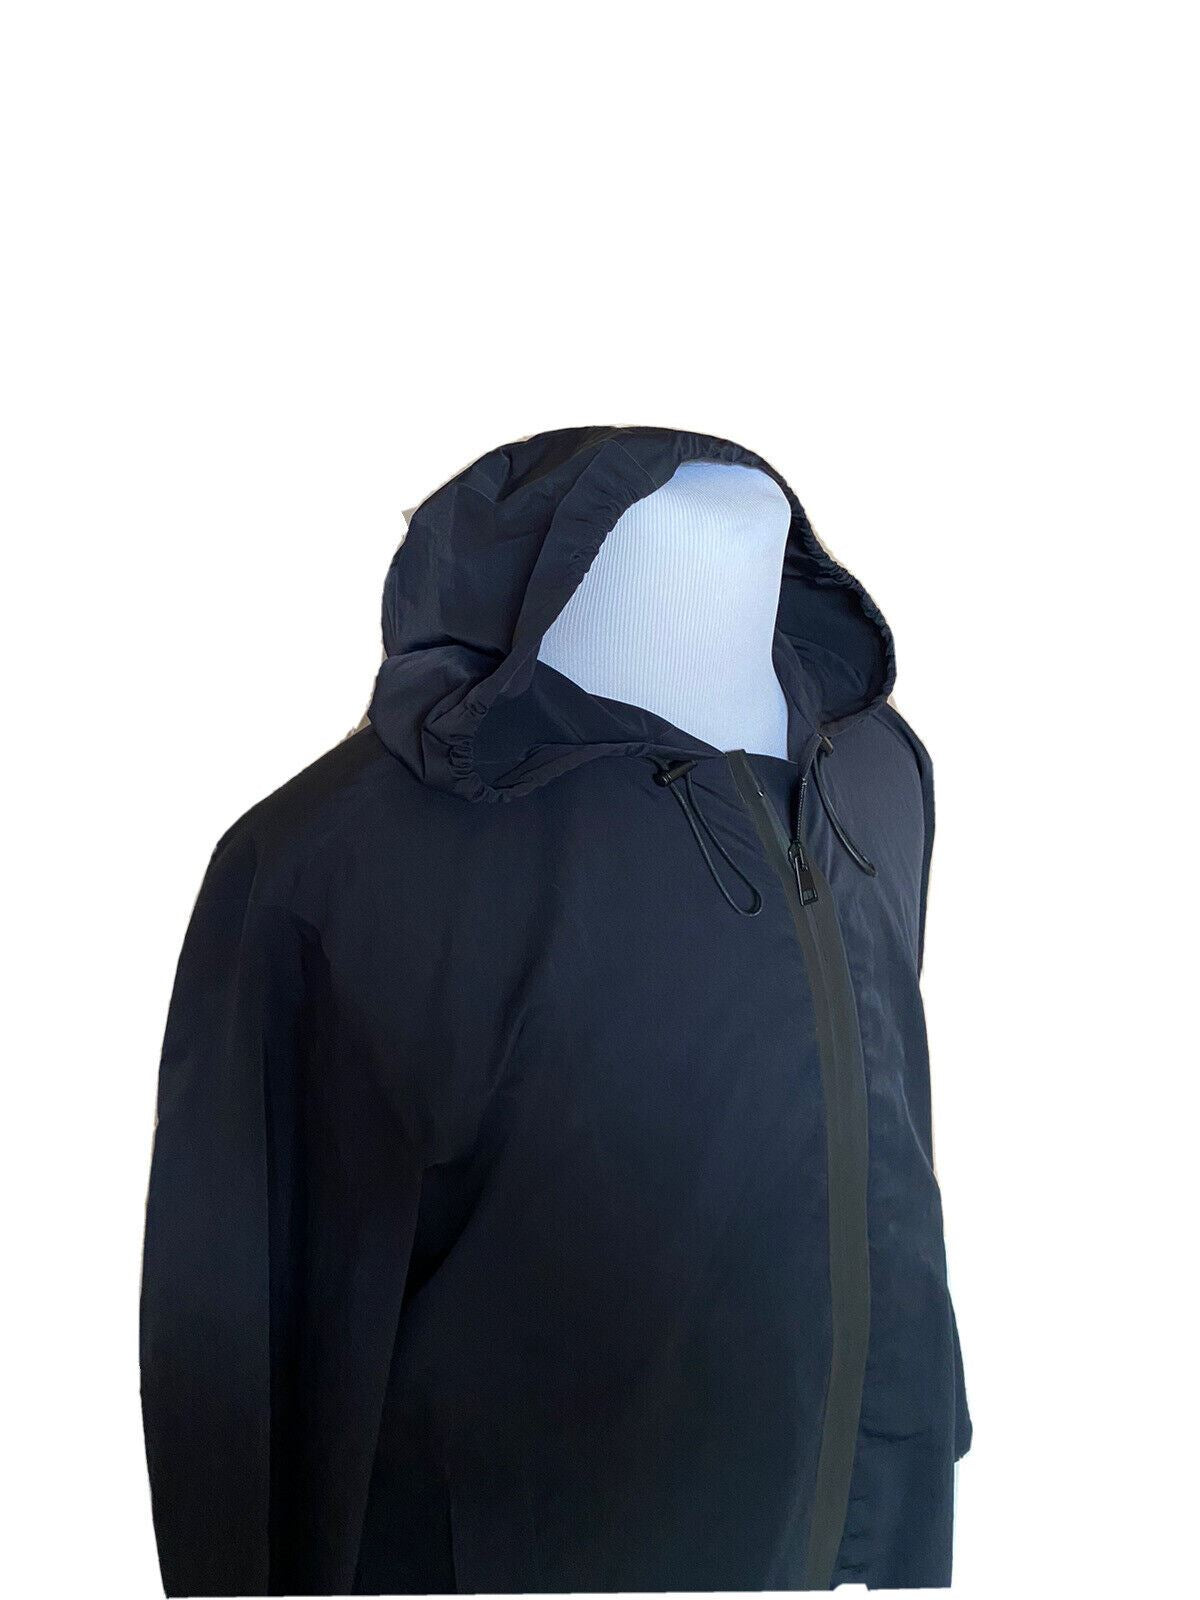 Мужская черная куртка из технического нейлона Bottega Veneta 1850 долларов NWT 42 US